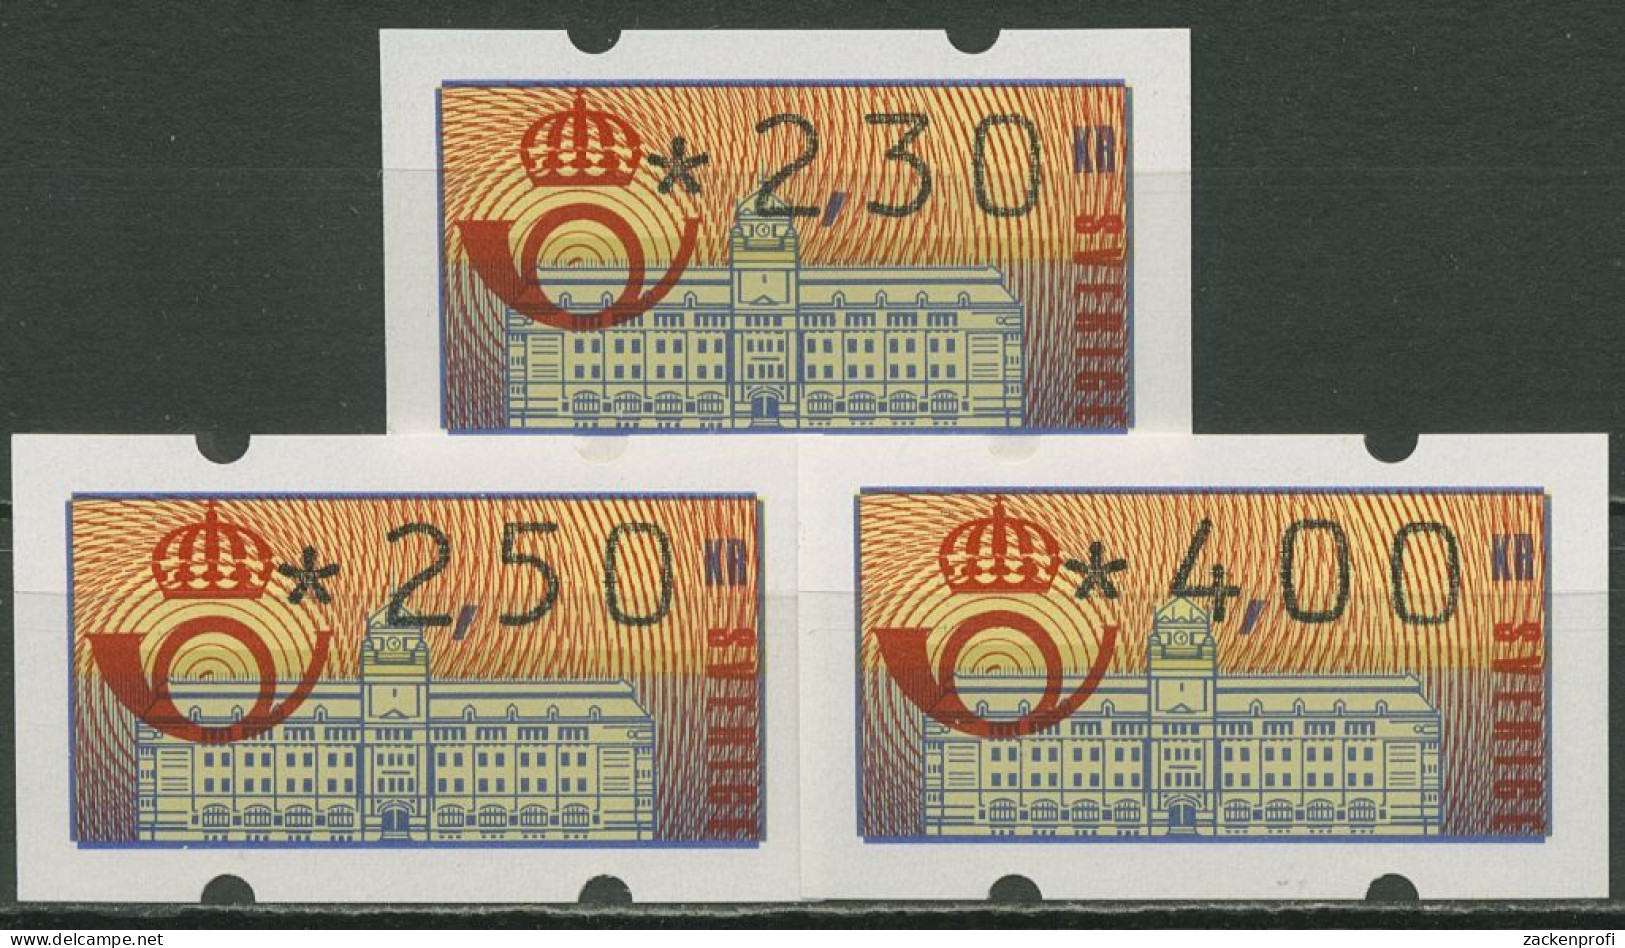 Schweden ATM 1992 Hauptpostamt Satz 3 Werte: 2,30/2,50/4,00 ATM 2 H S Postfrisch - Vignette [ATM]